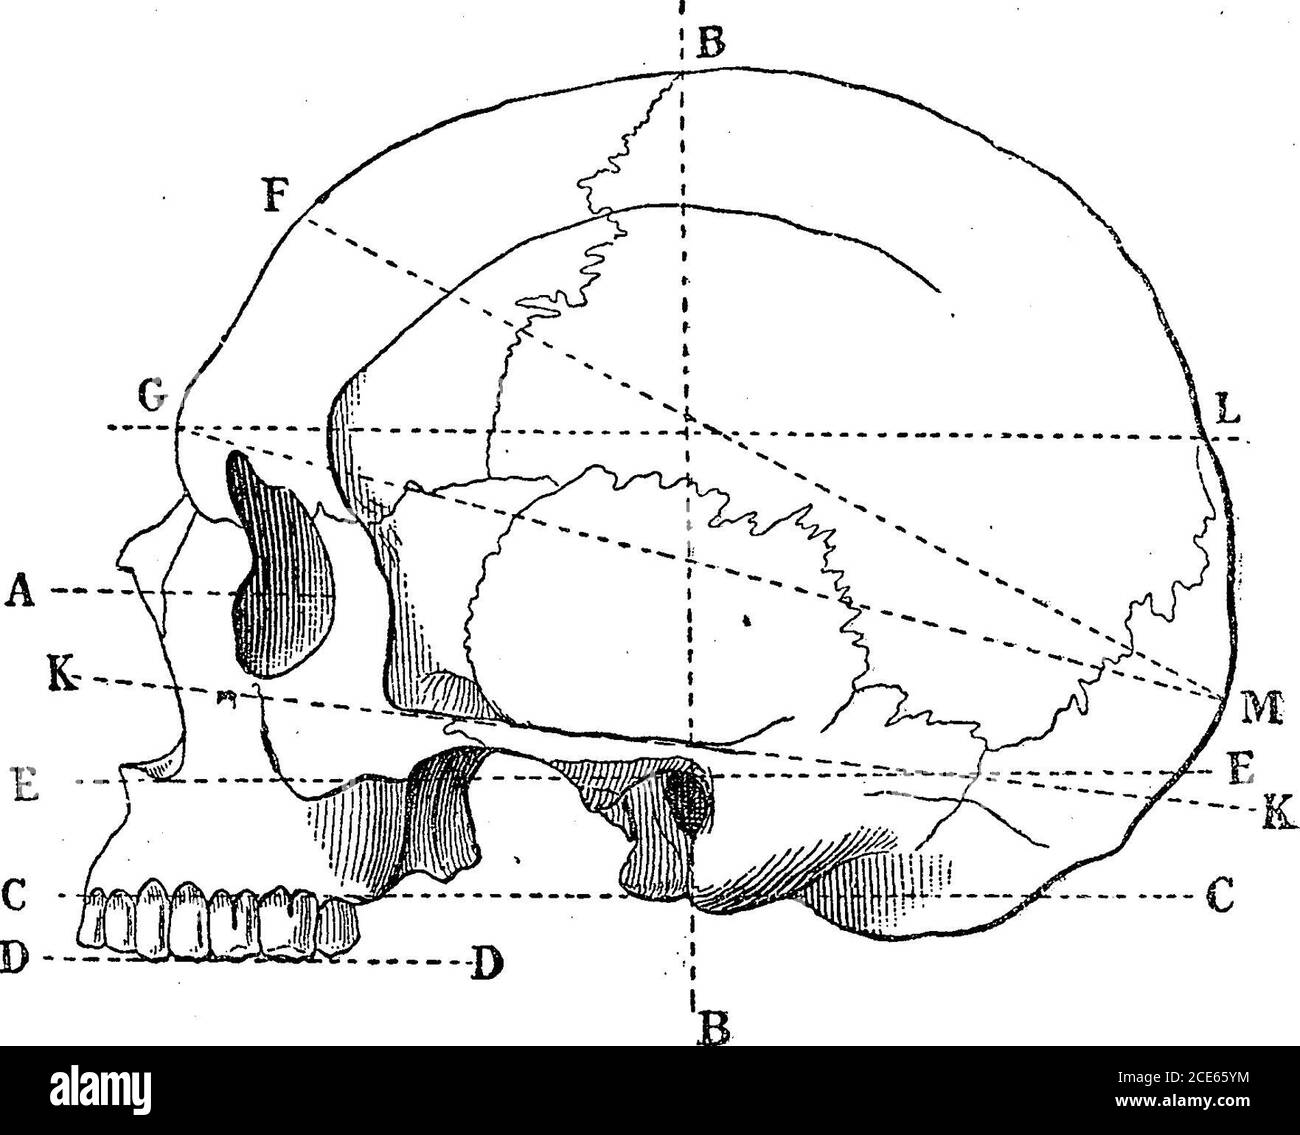 . Antropologia . , è il piano alveolo-condy-magro, determinato da tre punti facilmente accessibili, vale a dire il punto alveolare, o punto medio dell'arco alveolare superiore, e i punti di pendenza della superficie inferiore dei condili occipitali. L'ite rappresentata in Eig. 5 con la linea A P Q, e in Fig. 7 con la linea C C. è in relazione a questo piano alveolo-condilano, detto anche piano naturale della base del cranio, che M.Broca misura il grado di inclinazione o di direzione rettilinea della visione, o piuttosto del piano passante per i due assi orbitali. * ci riferiamo al Mem Foto Stock